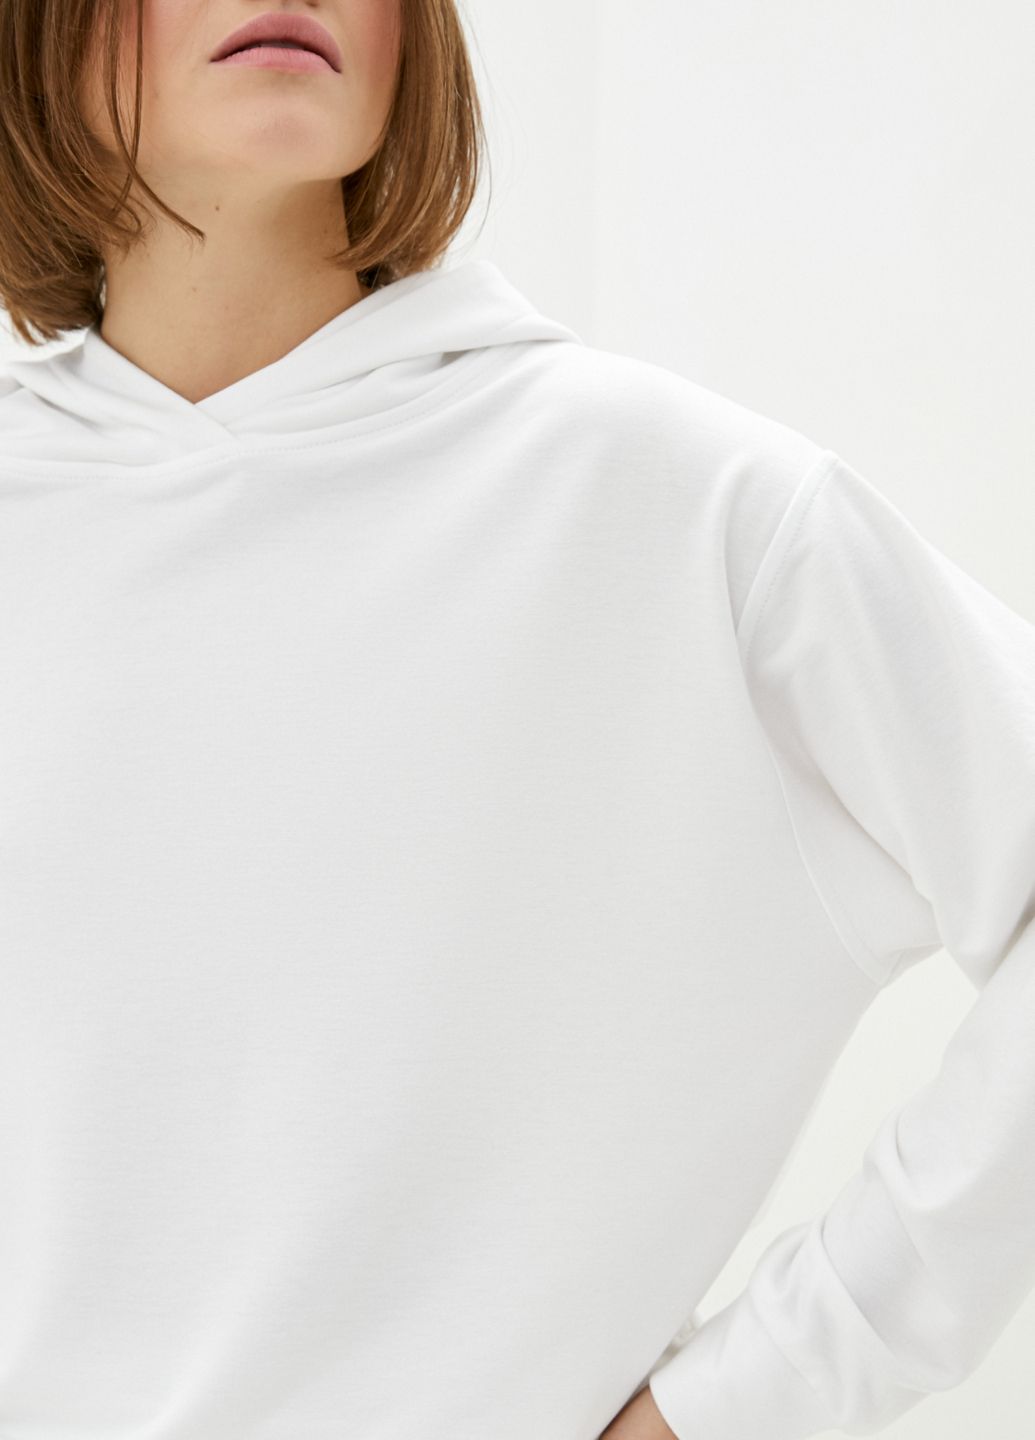 Купить Белое оверсайз женское худи Merlini Палермо 110000023, размер 42-44 в интернет-магазине